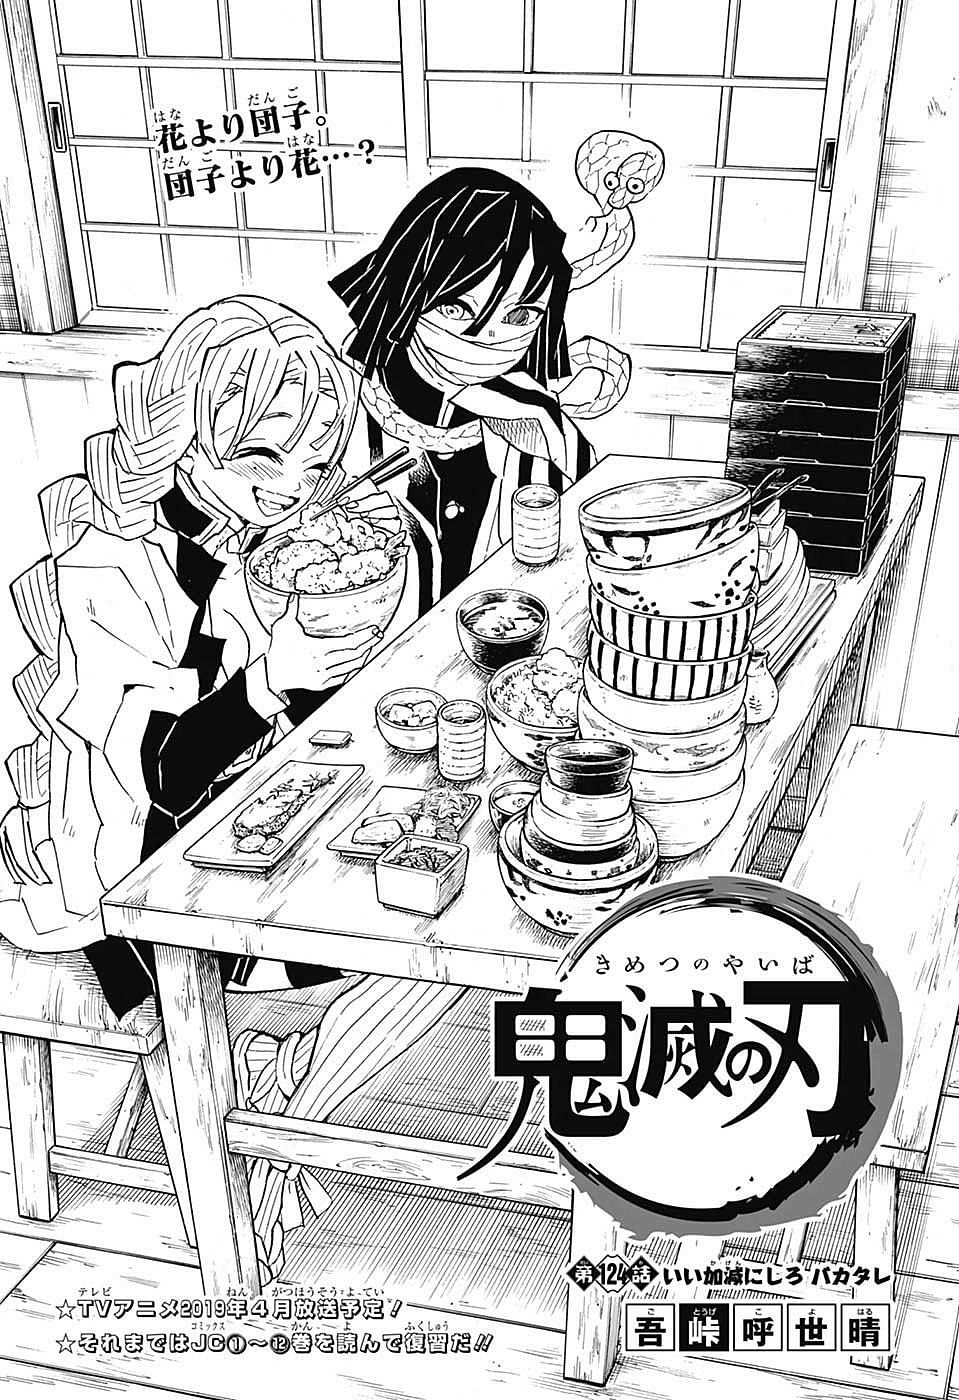 Mitsuri and Obanai enjoy a meal (Image via Koyoharu Gotoueg/Shueisha, Viz, Demon Slayer)